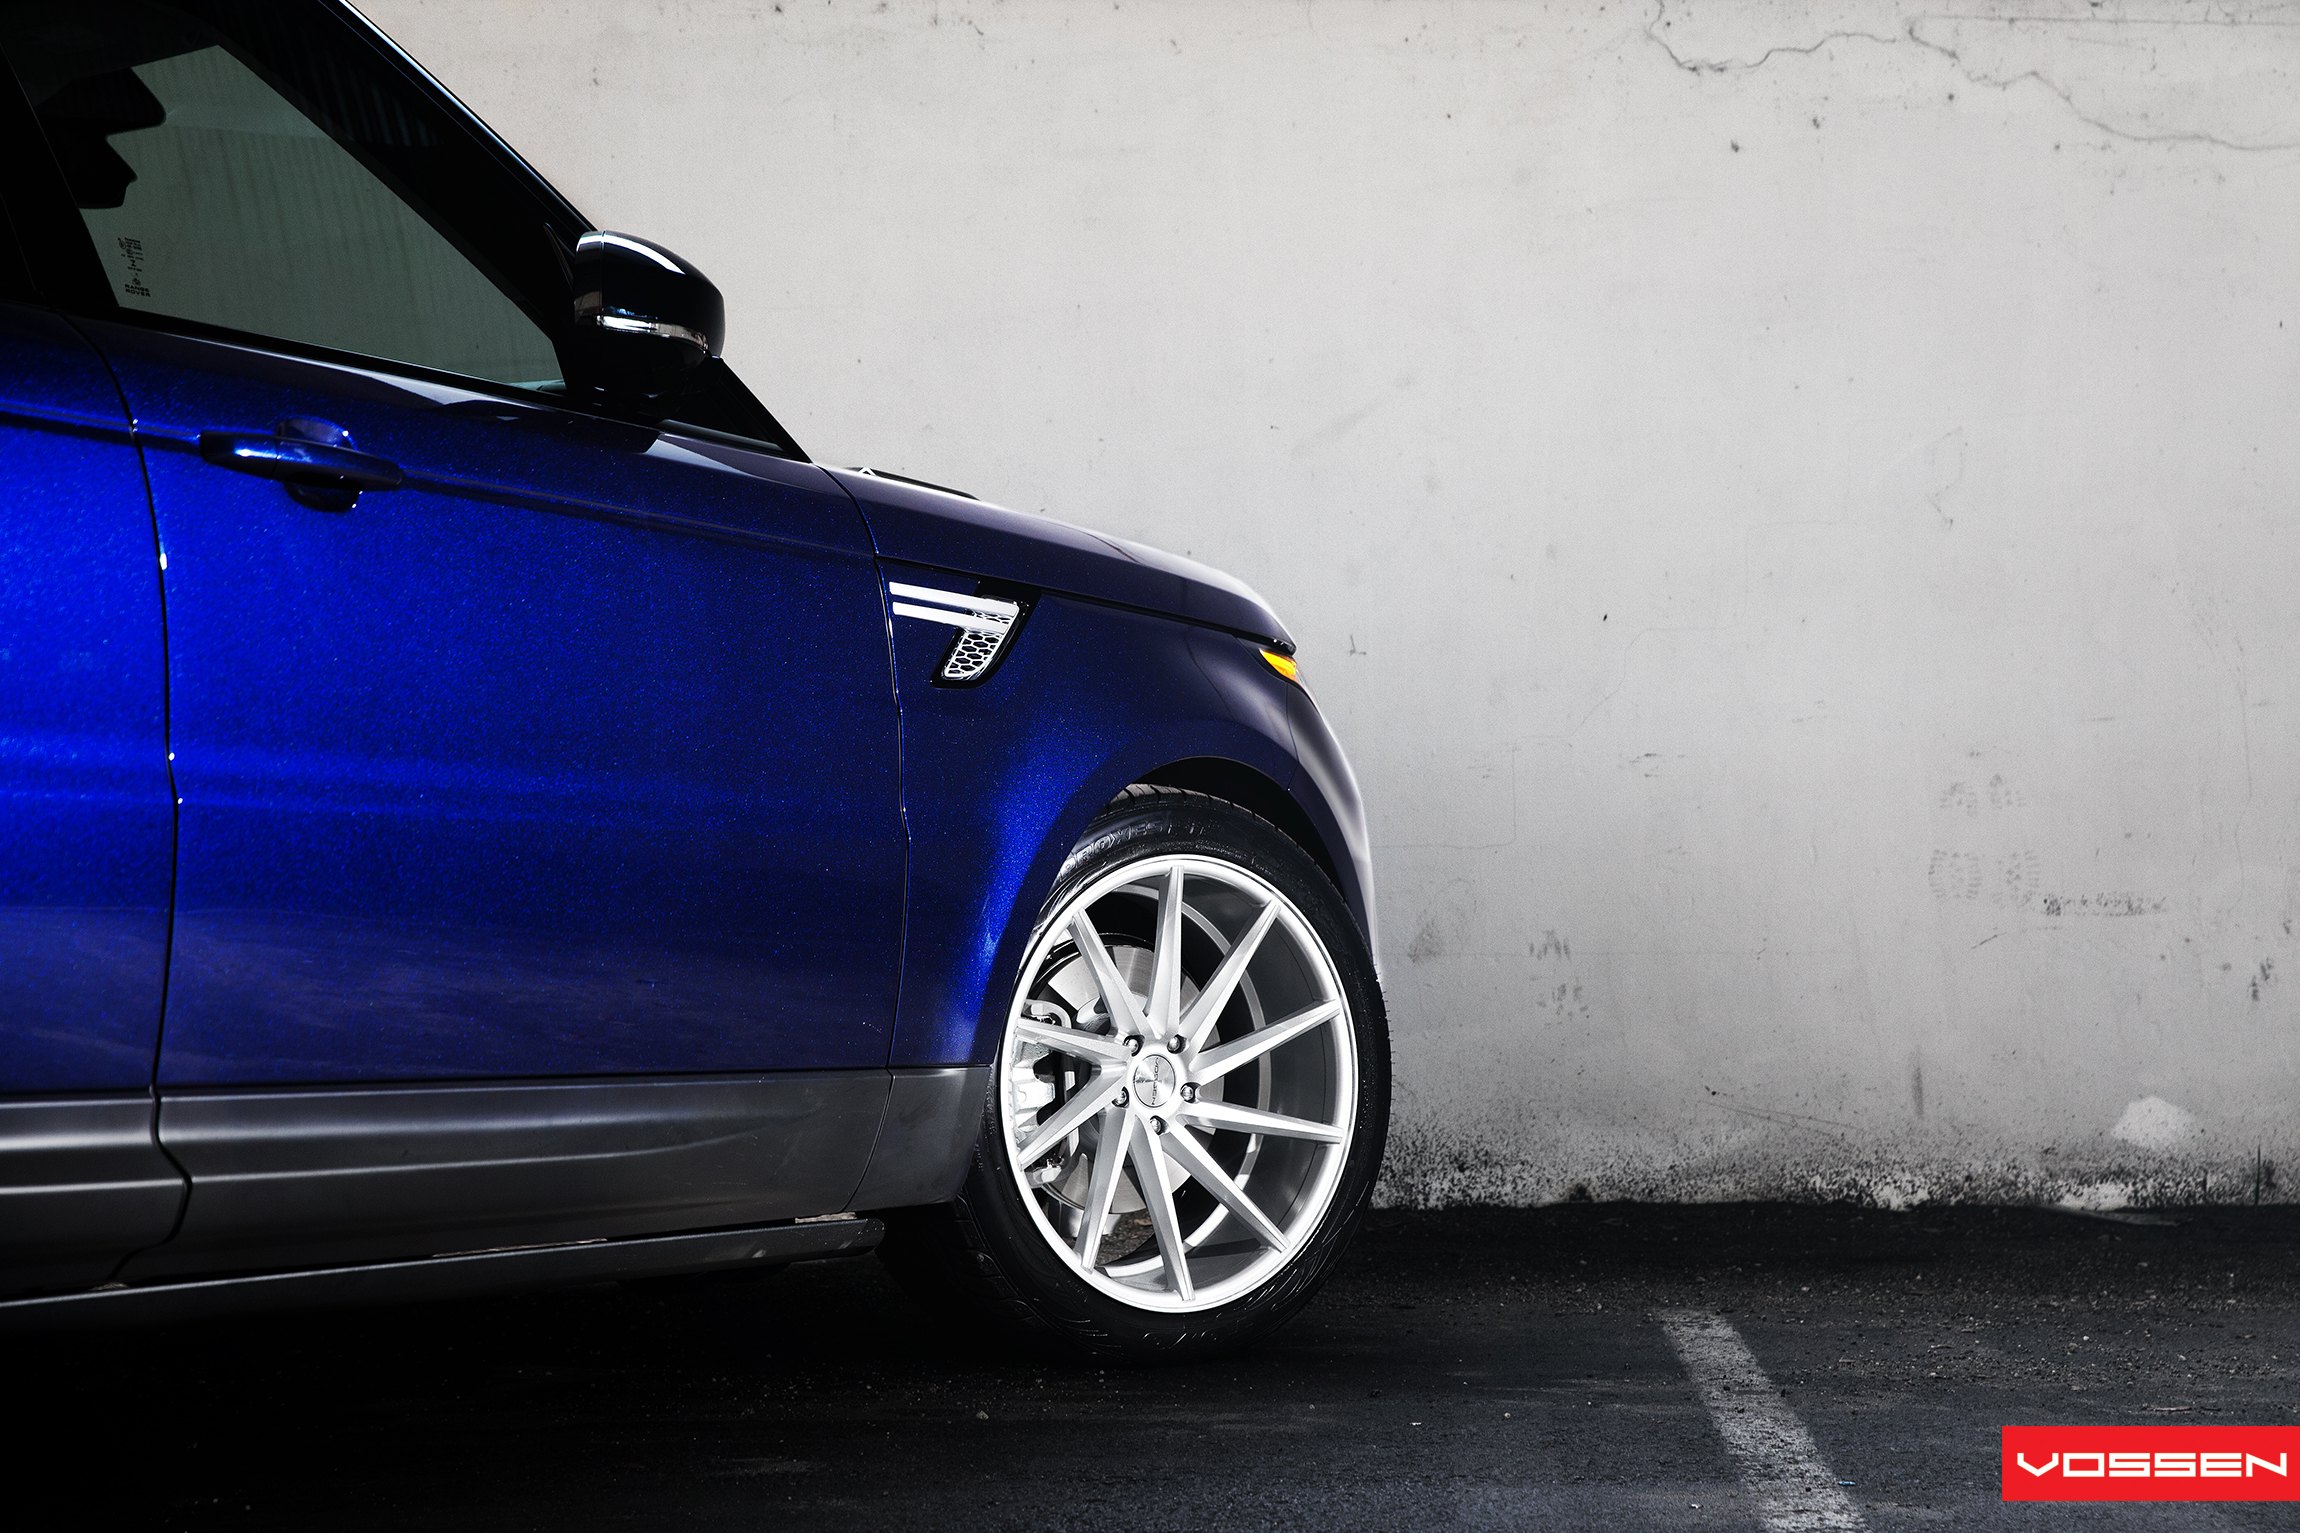 Blue Land Rover Sport with Chrome Vossen Wheels - Photo by Vossen